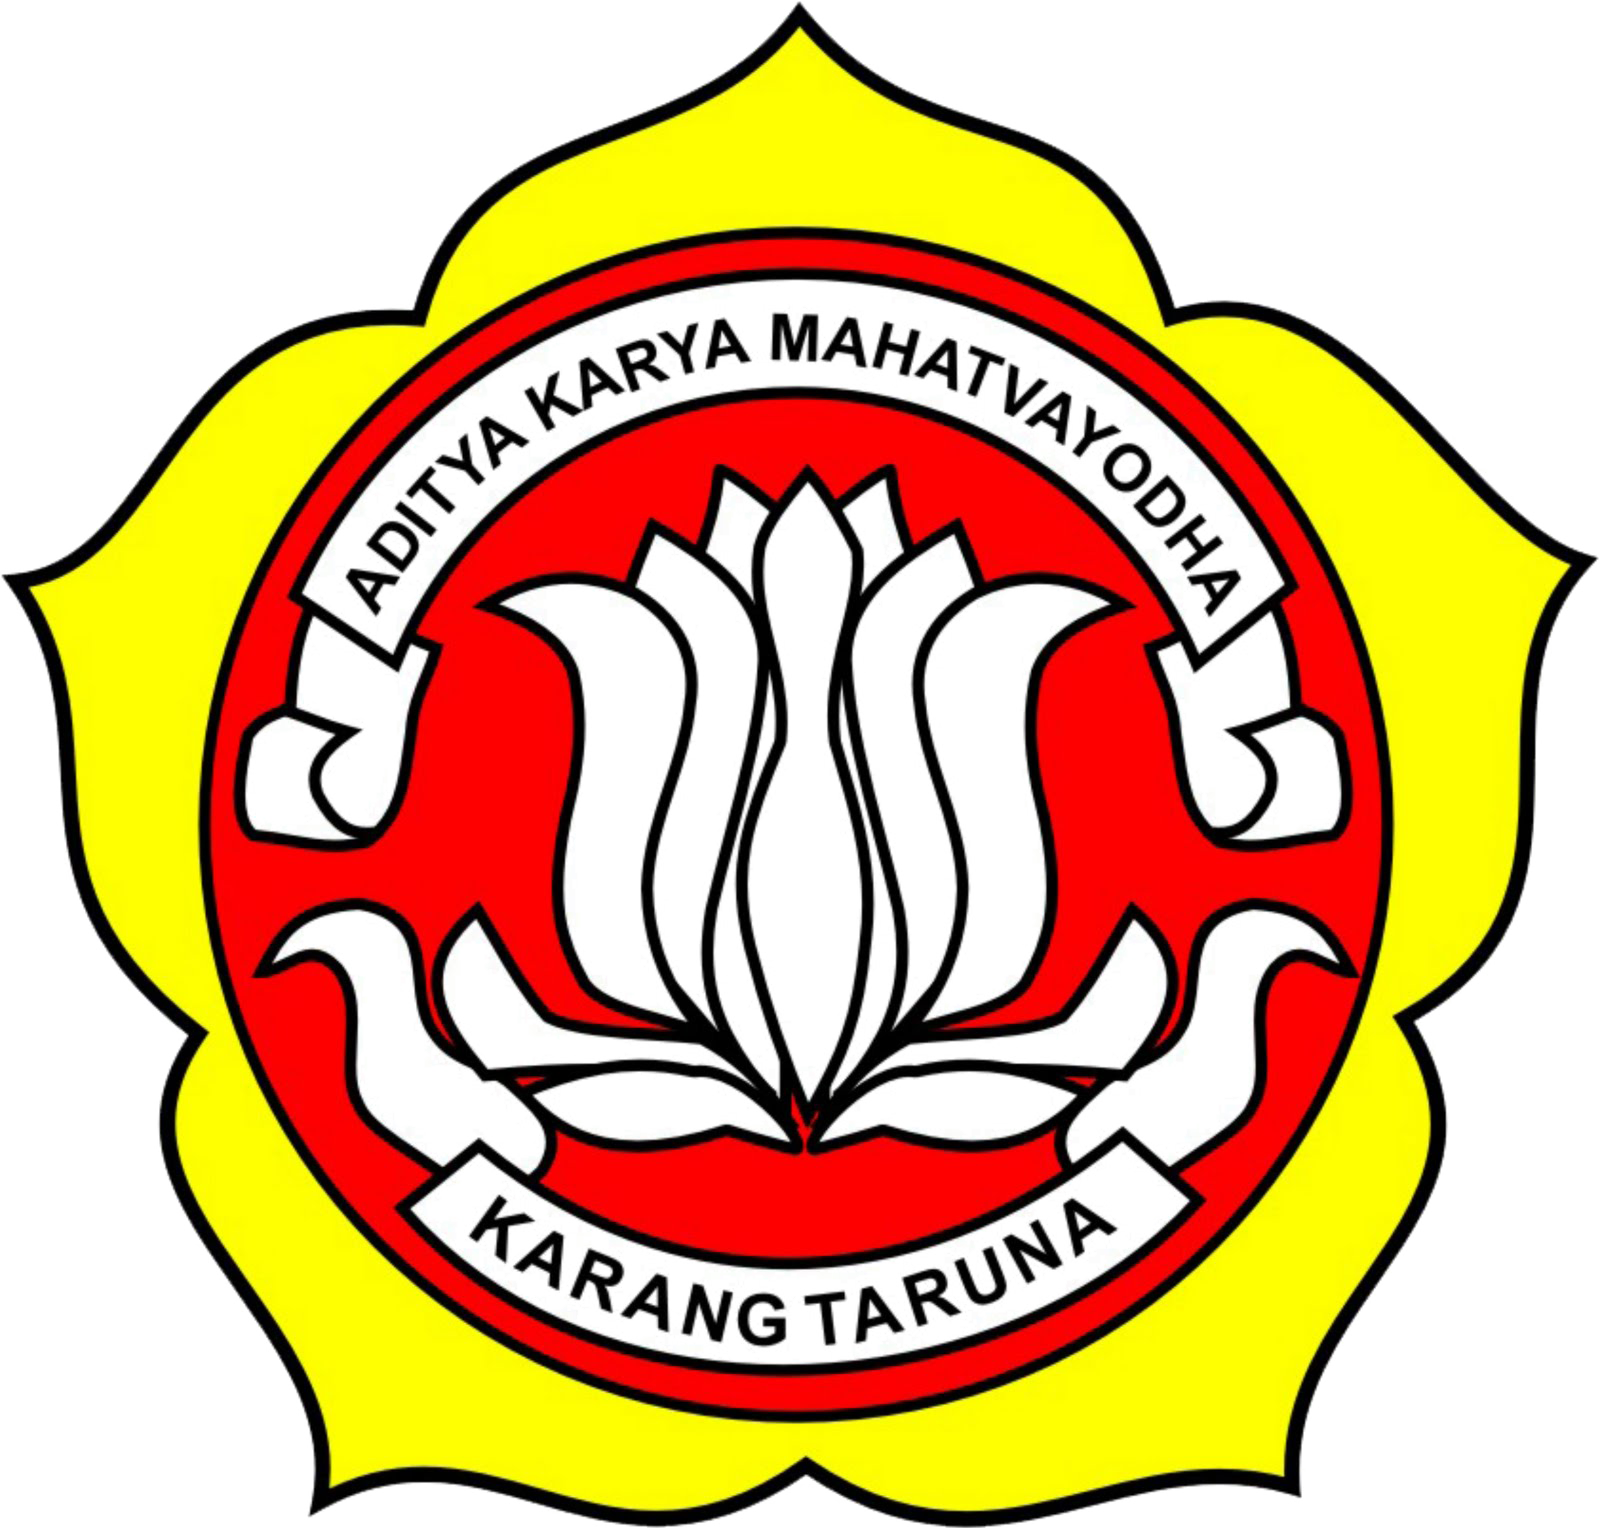  KARANG  TARUNA  MITRA HARAPAN JAYA  Logo Karang  Taruna 